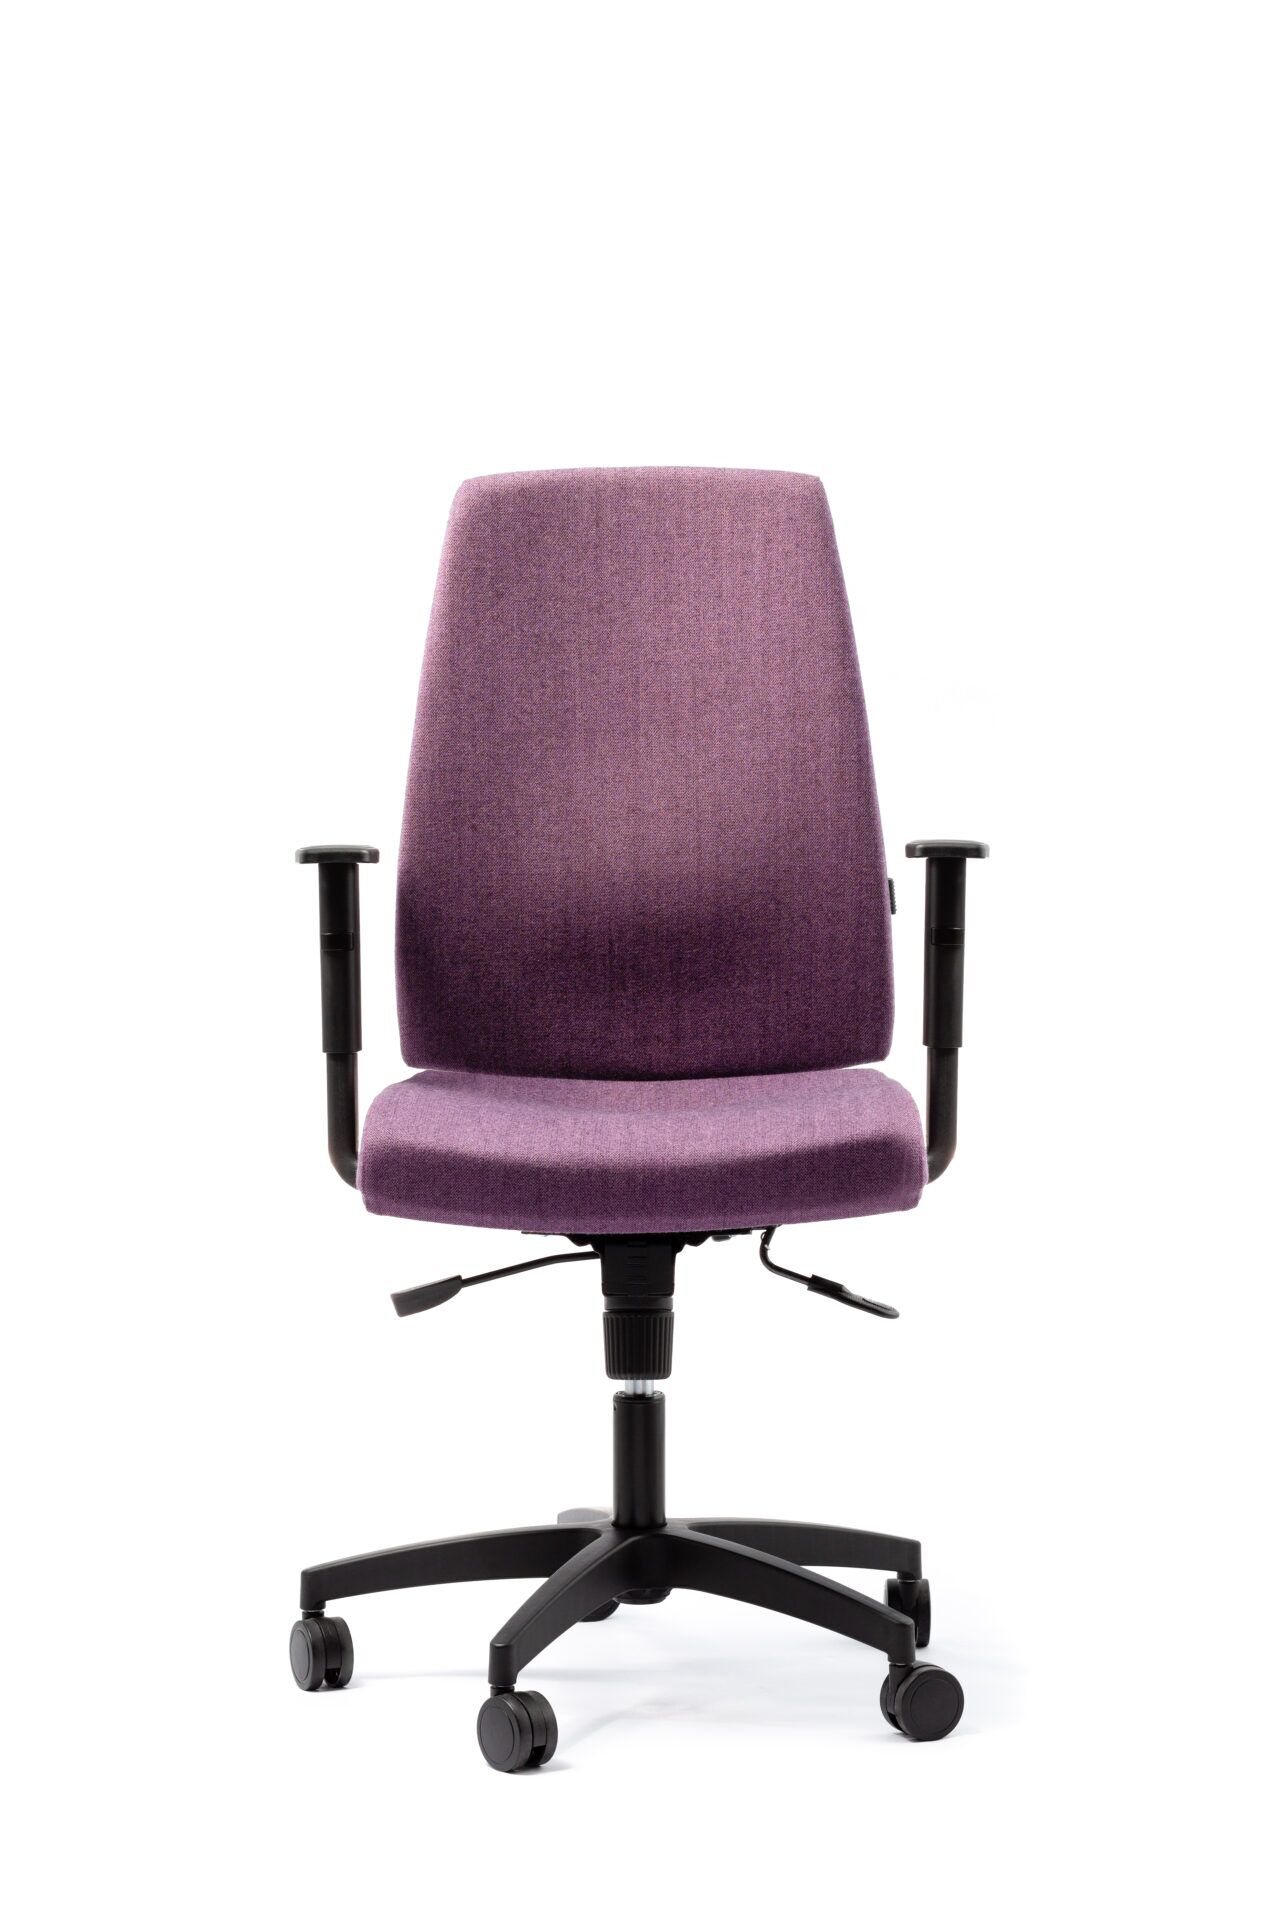 Fioletowy fotel biurowy - od przodu zdjęcie 1